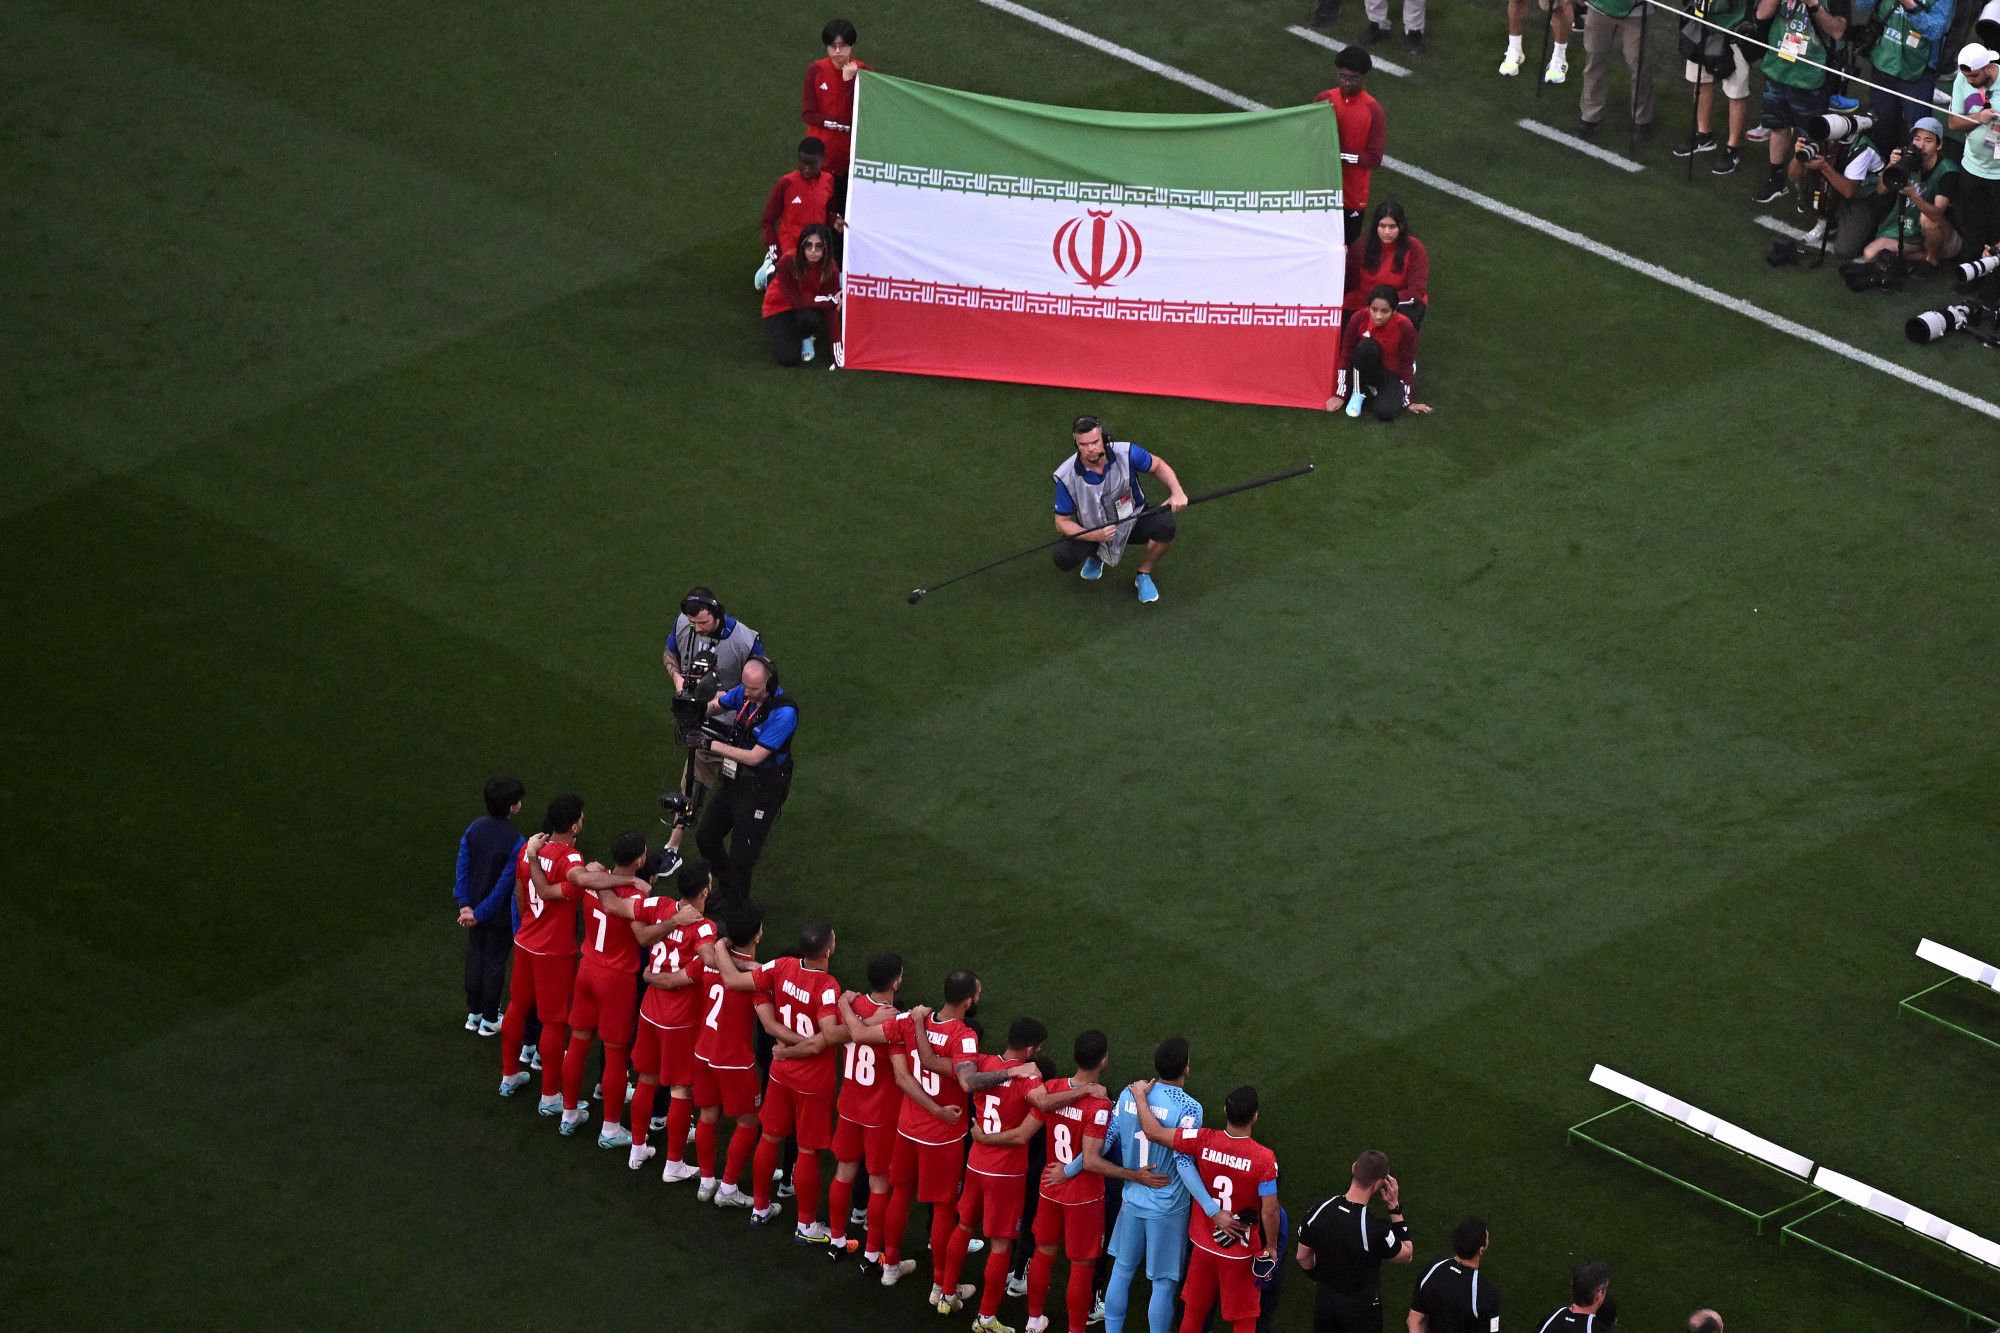 Az amerikaiak edzője bocsánatot kért, amiért egy posztban megváltoztatták a meccsük előtt az iráni zászlót